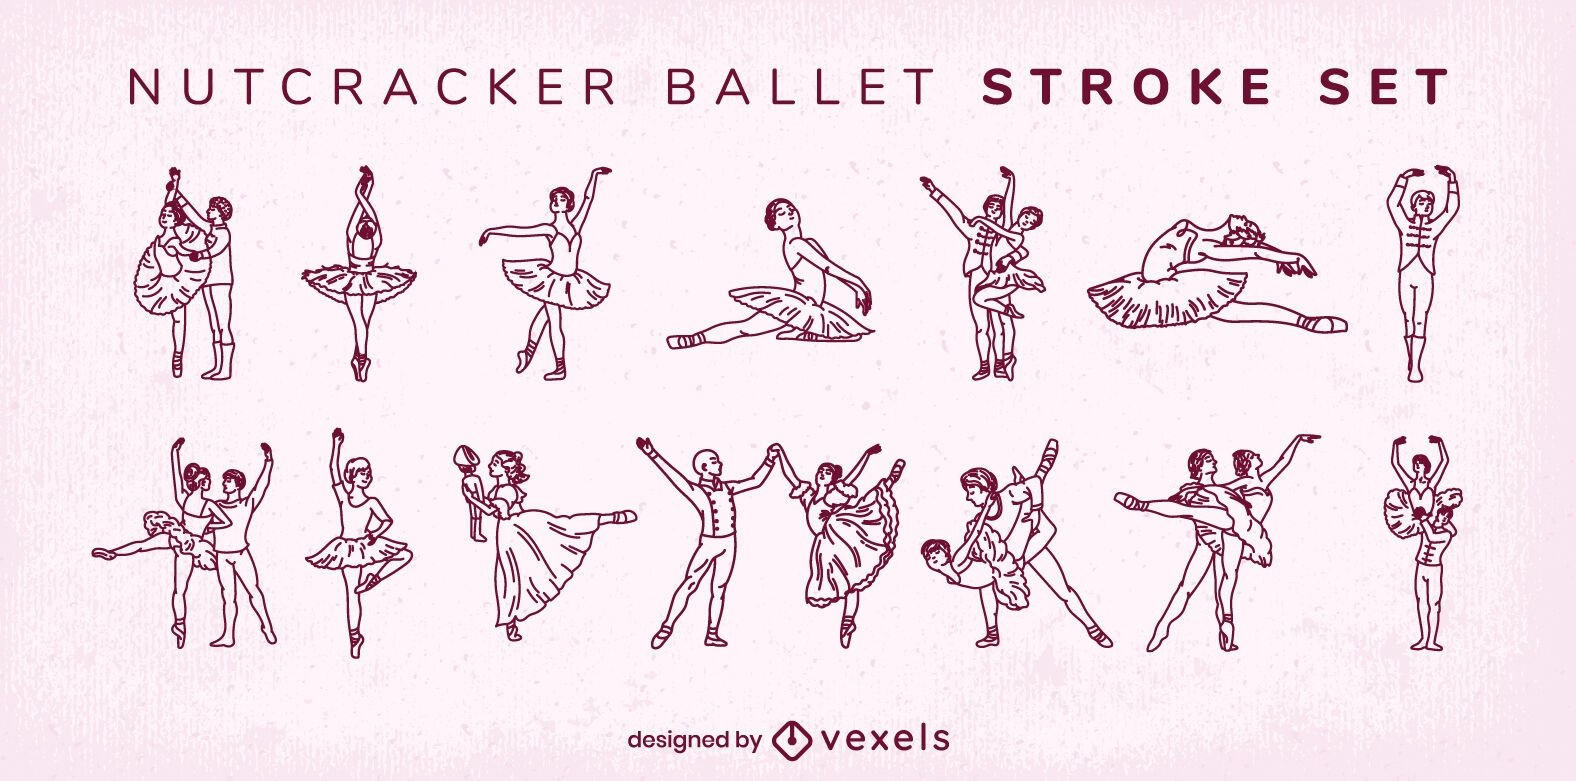 Men and women dancing ballet stroke set